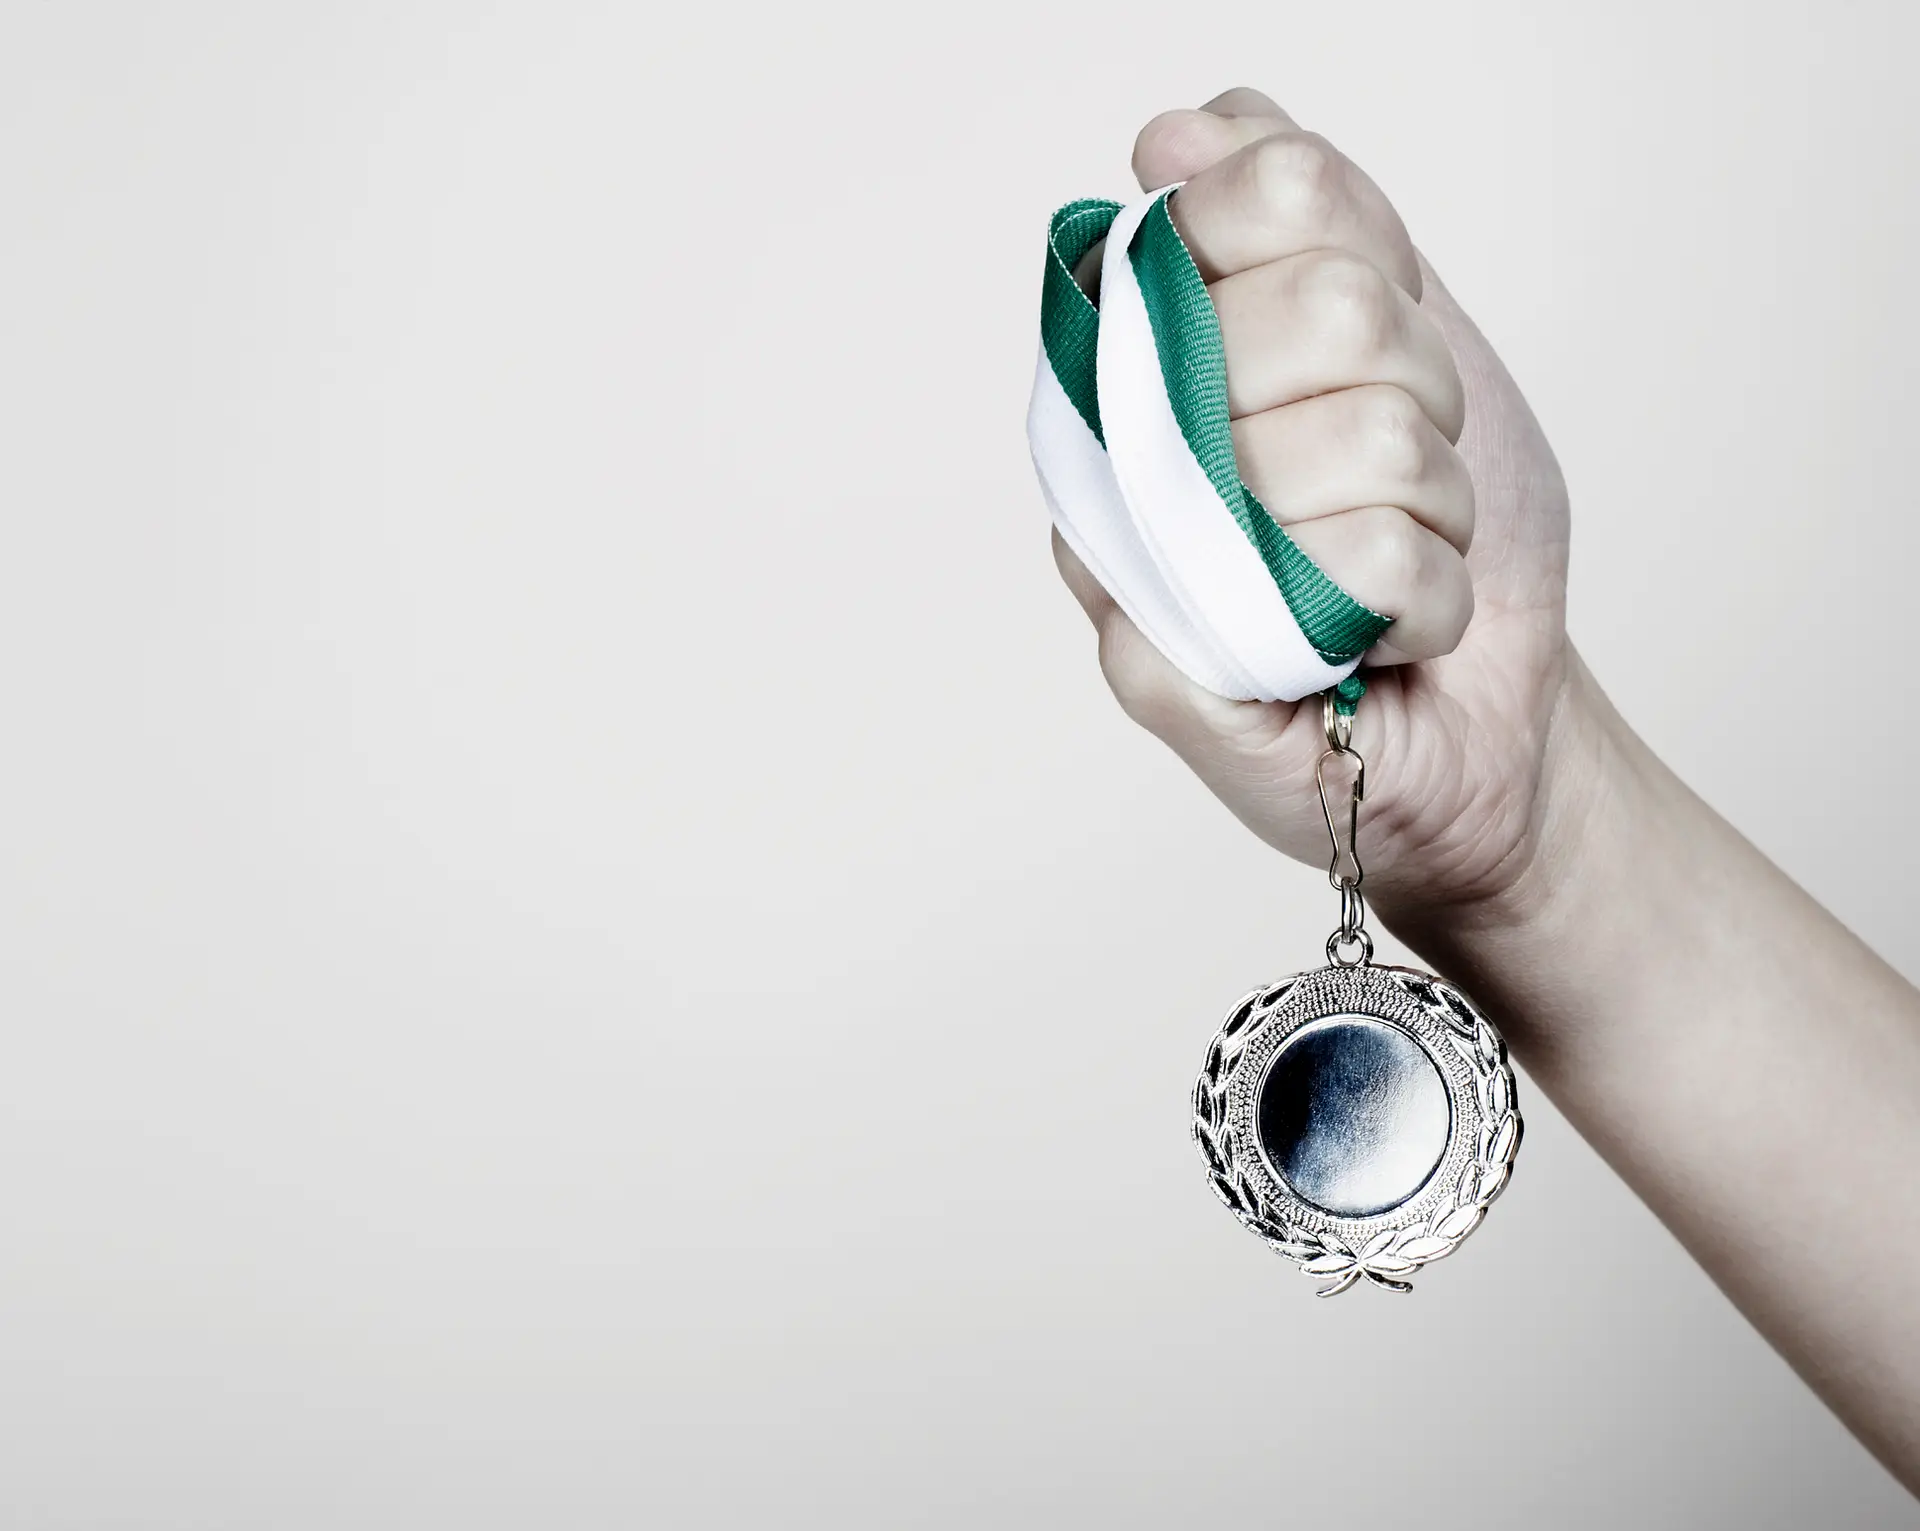 Portugal conquista 84 medalhas nos Europeus para atletas com síndrome de Down